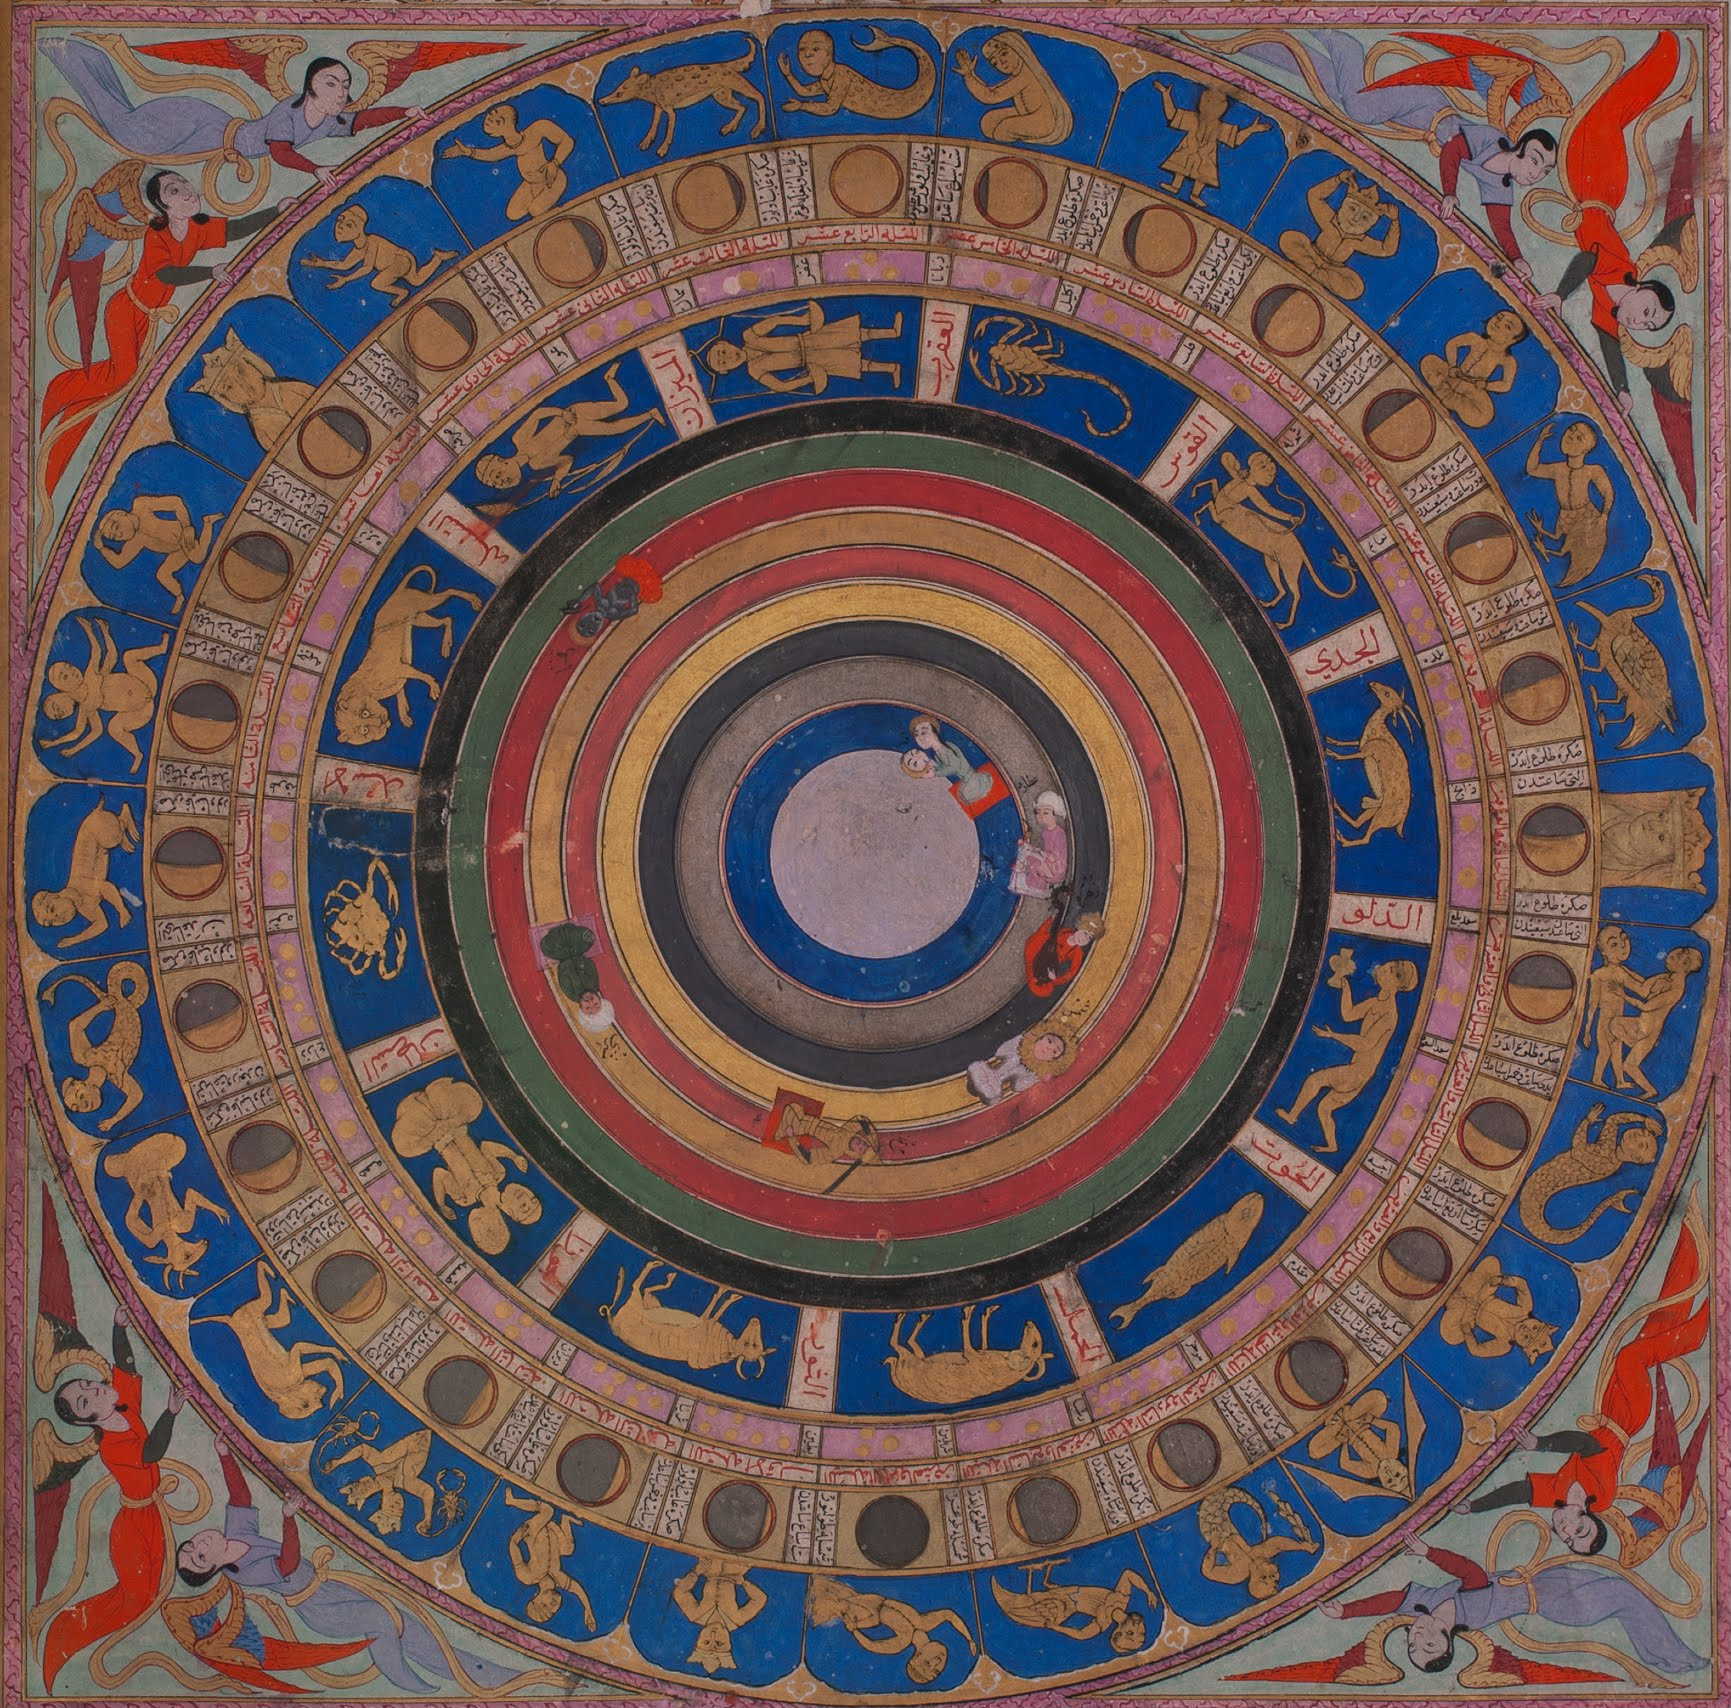 天体图 by 赛义德·洛克曼 阿舒里 - 1583 - 64.7 x 41.3 cm 伊斯坦布尔土耳其和伊斯兰艺术博物馆